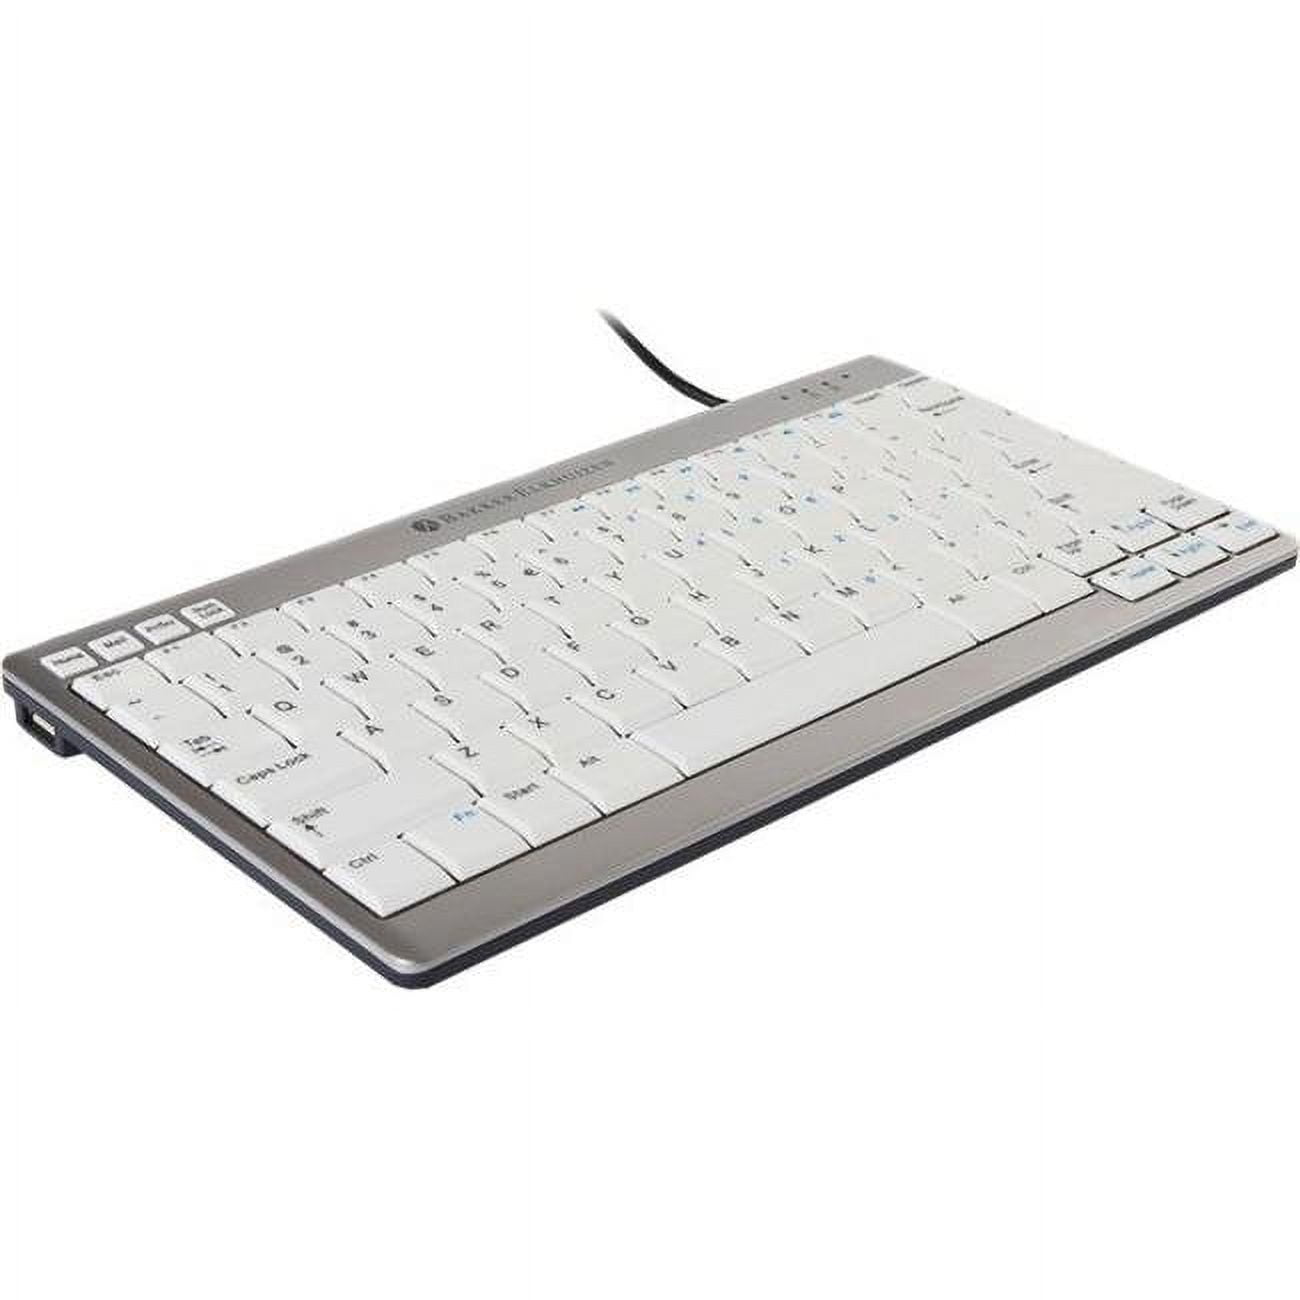 Picture of Bakker Elkhuizen BNEU950US Ultra Board 950 Compact US Keyboard